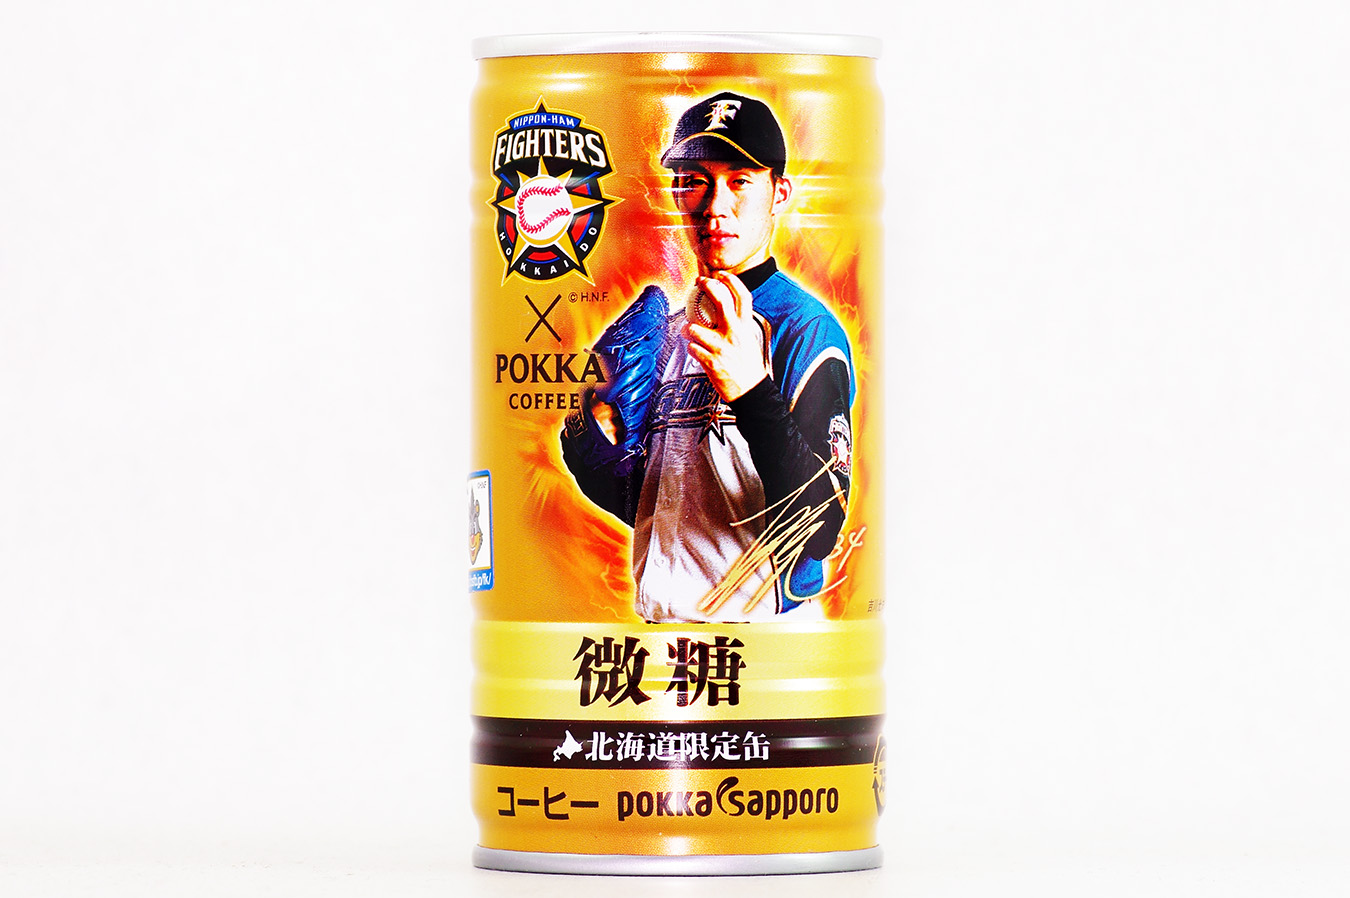 ポッカコーヒー ファイターズ2016年選手缶 微糖 吉川光夫選手 2016年8月